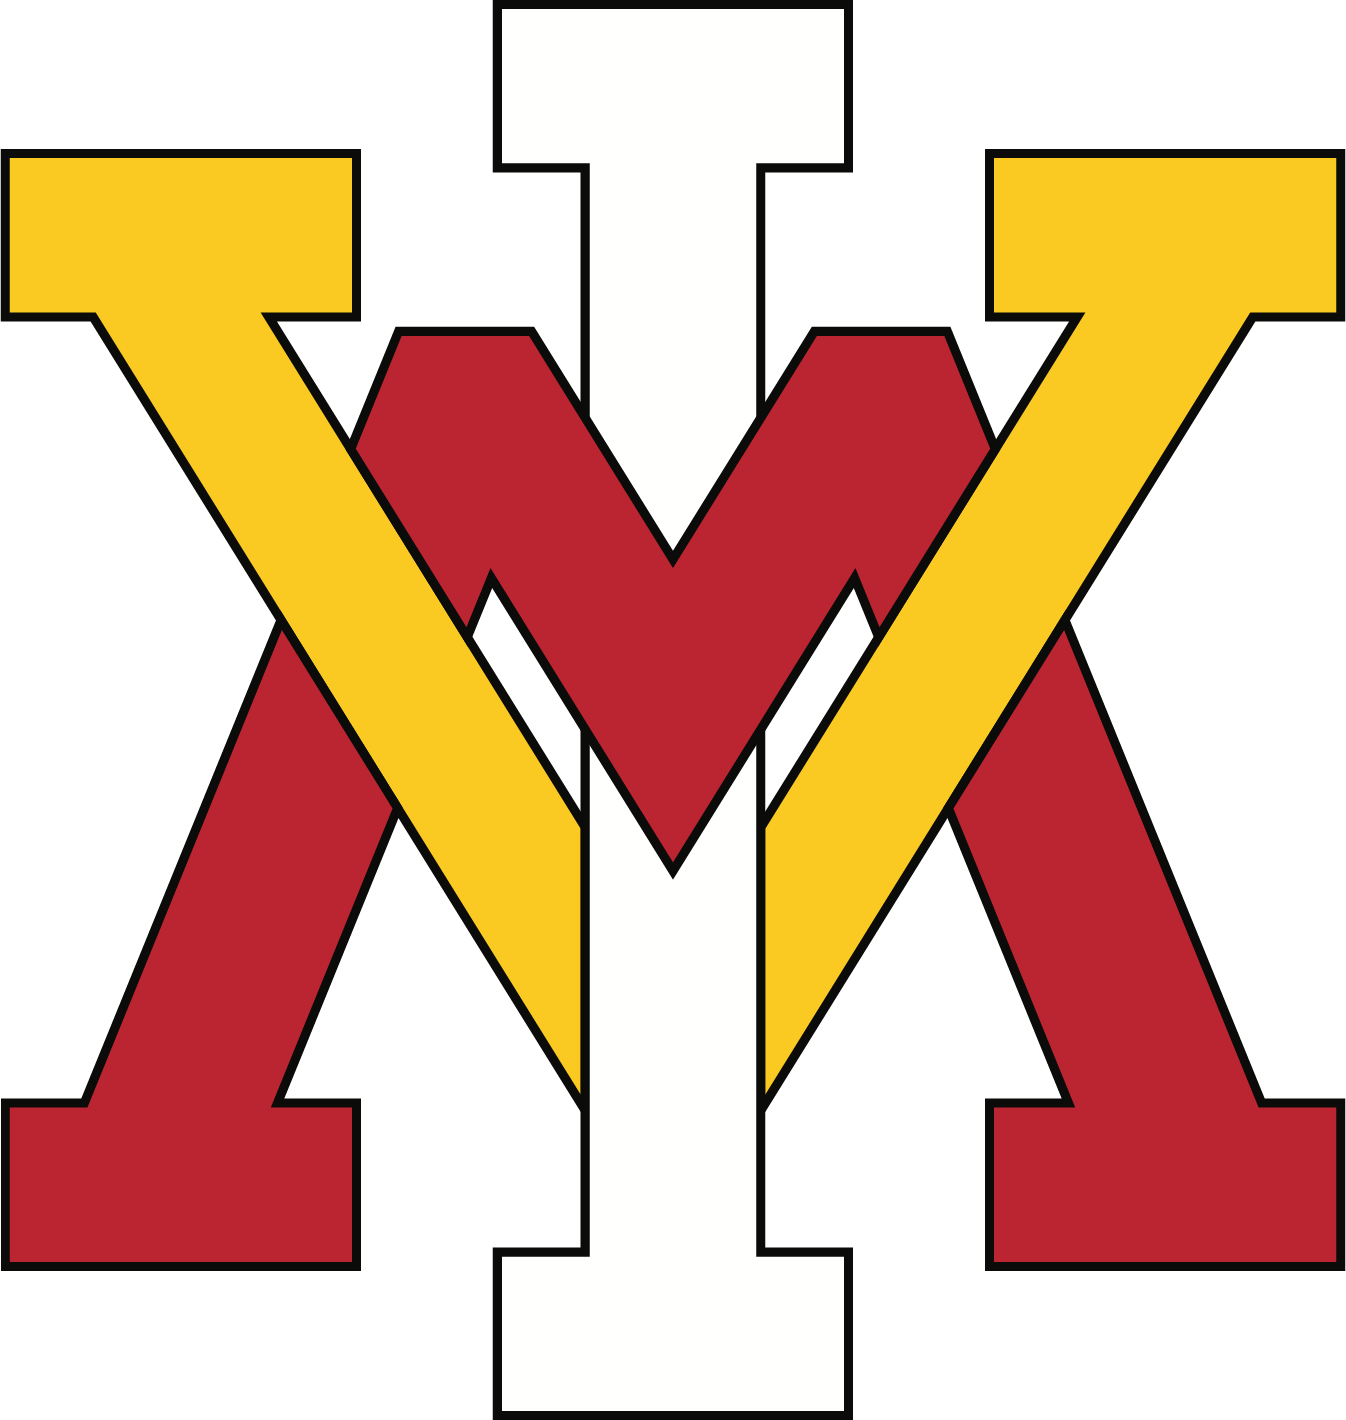 VMI Keydets Logo png